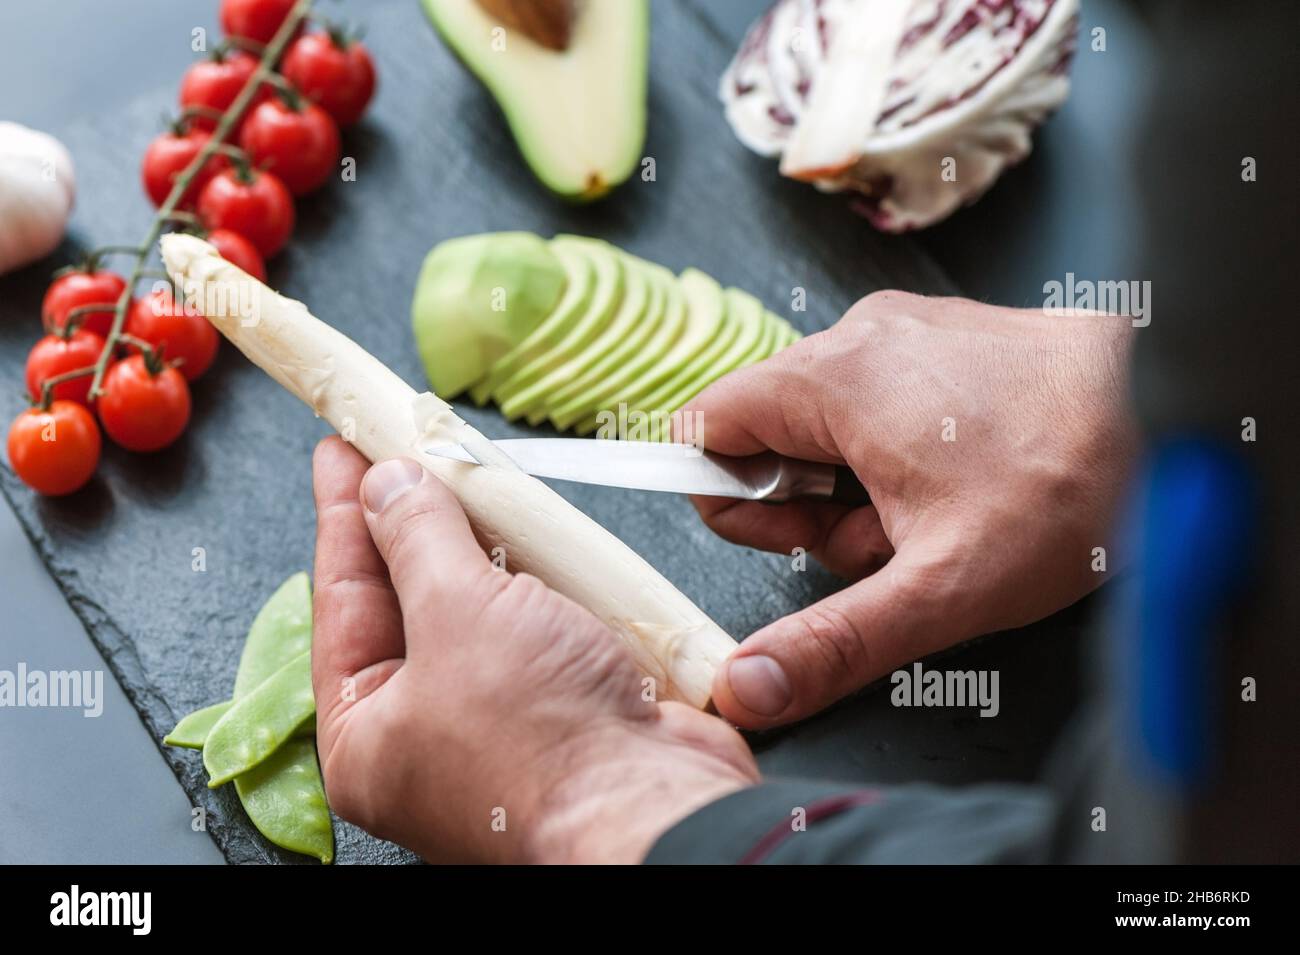 Spellatura manuale dei gambi di Asparagi con coltello, rimozione delle foglie esterne, pelo rifinito Asparagi giacenti su superficie scura Foto Stock